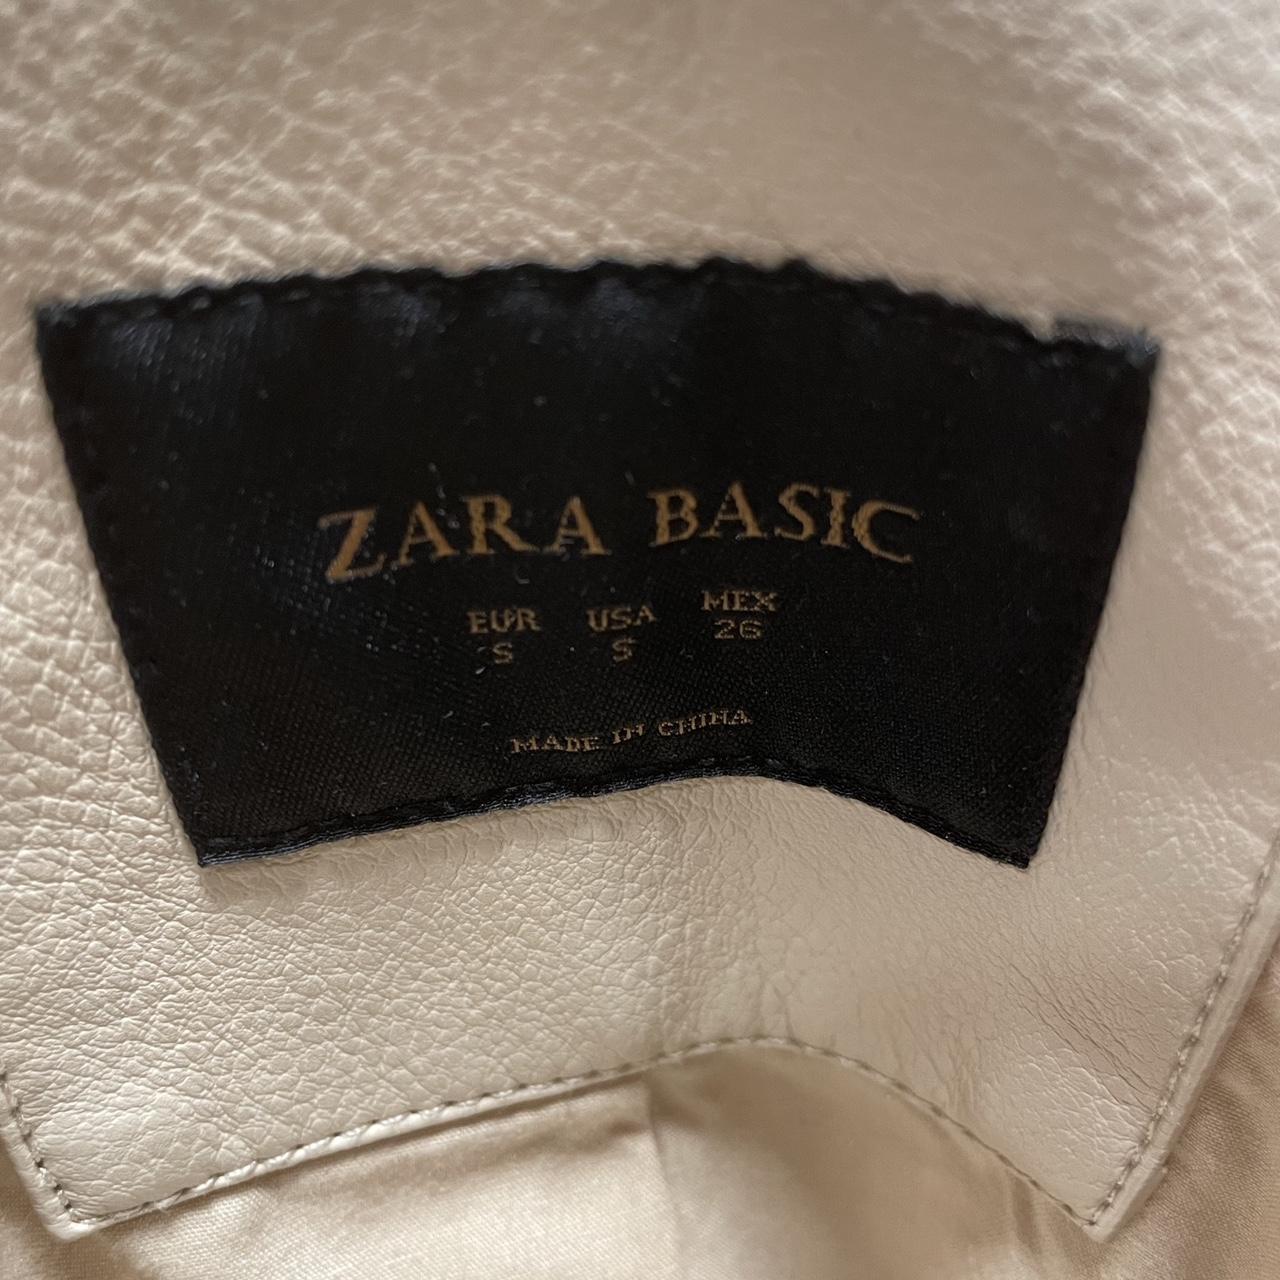 Zara Basic faux leather jacket off white/cream